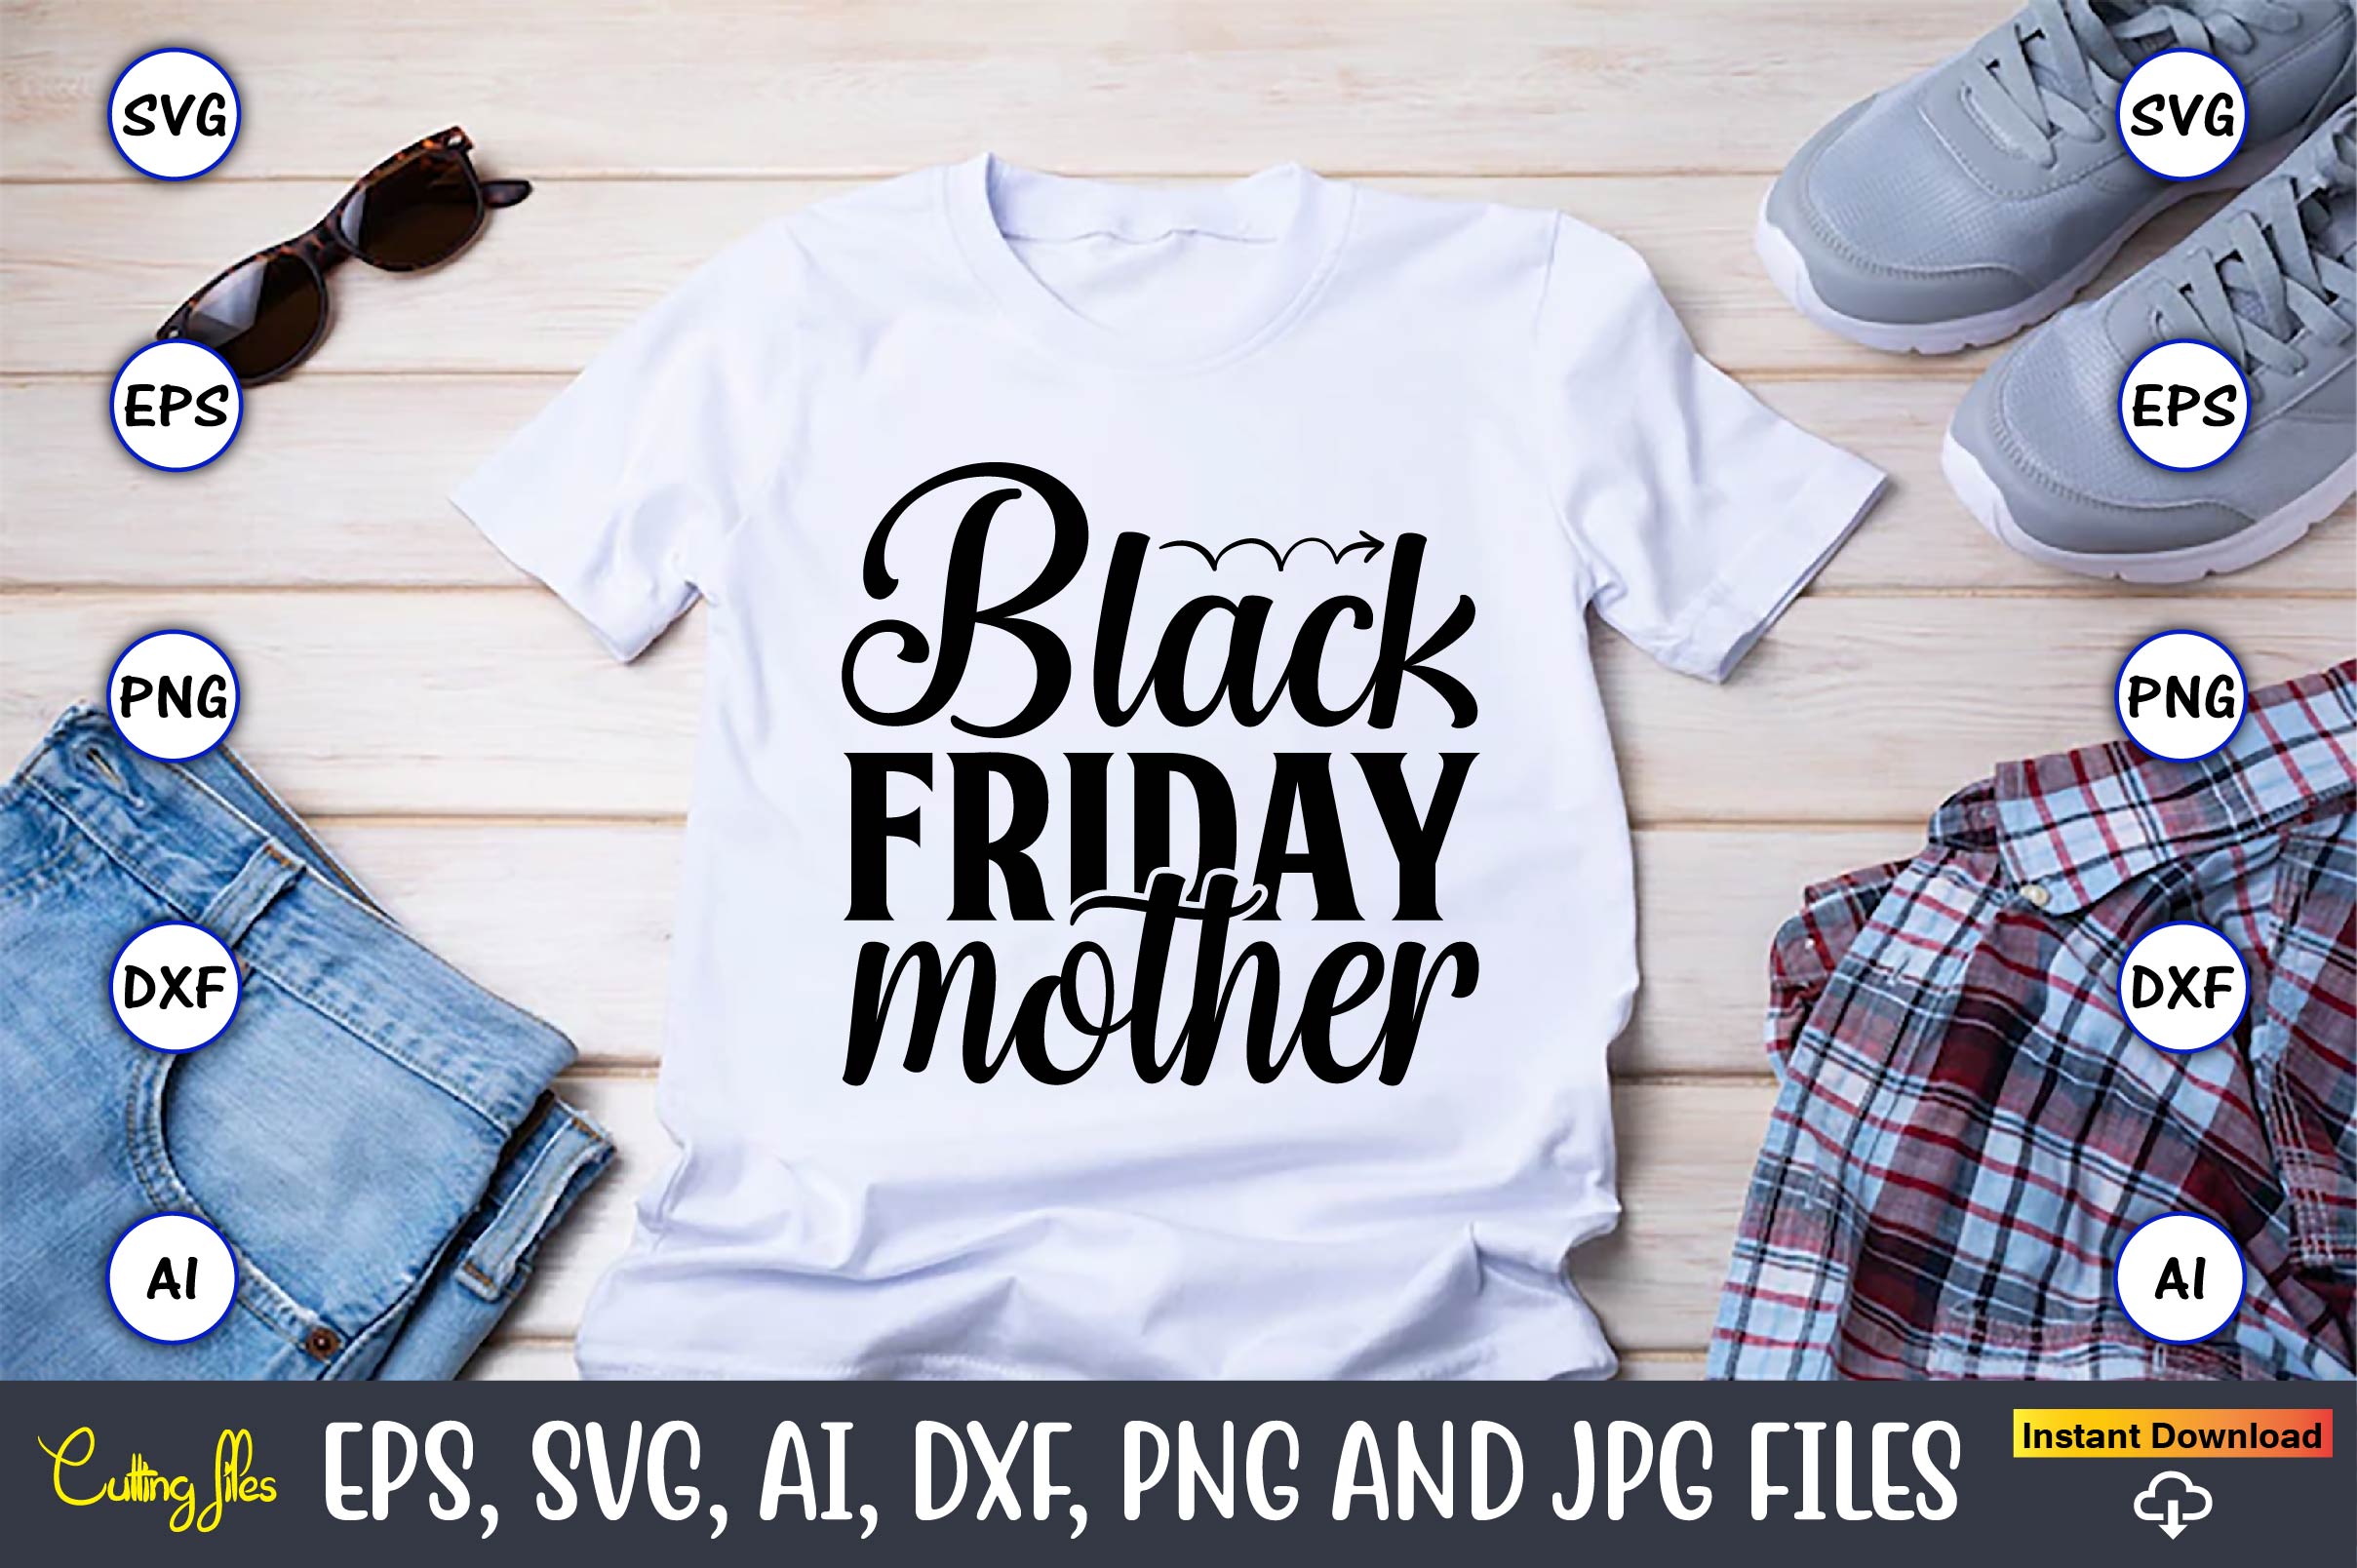 T-Shirt Black Friday Mother Design bundle preview image.